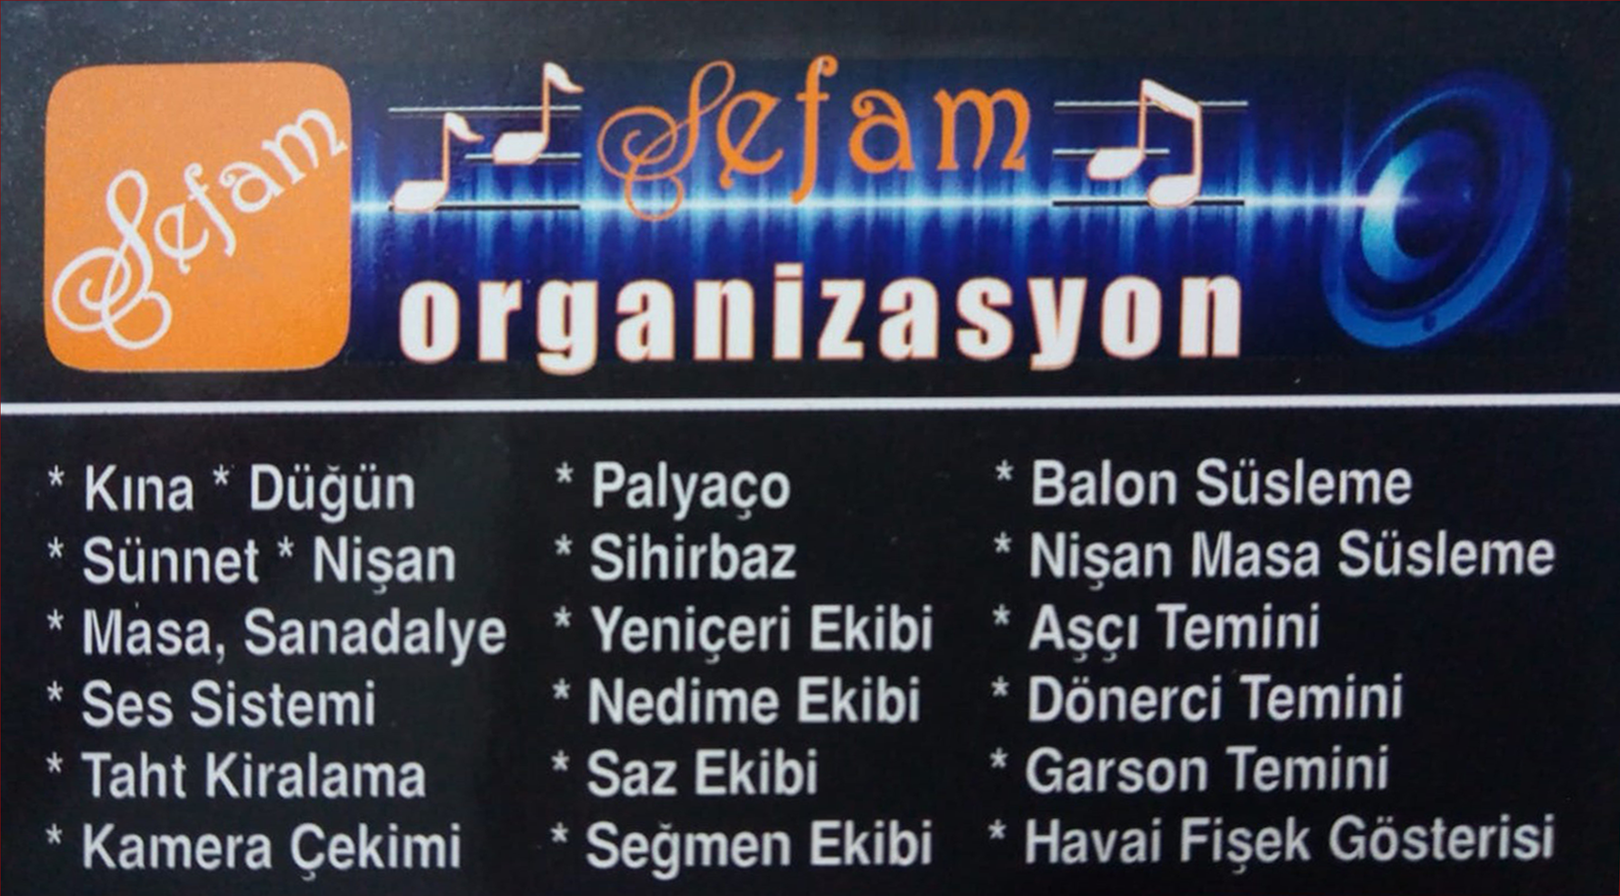 Ankara Bala Sefam Organizasyon Ankara 0536 474 94 46 - 0552 474 94 46